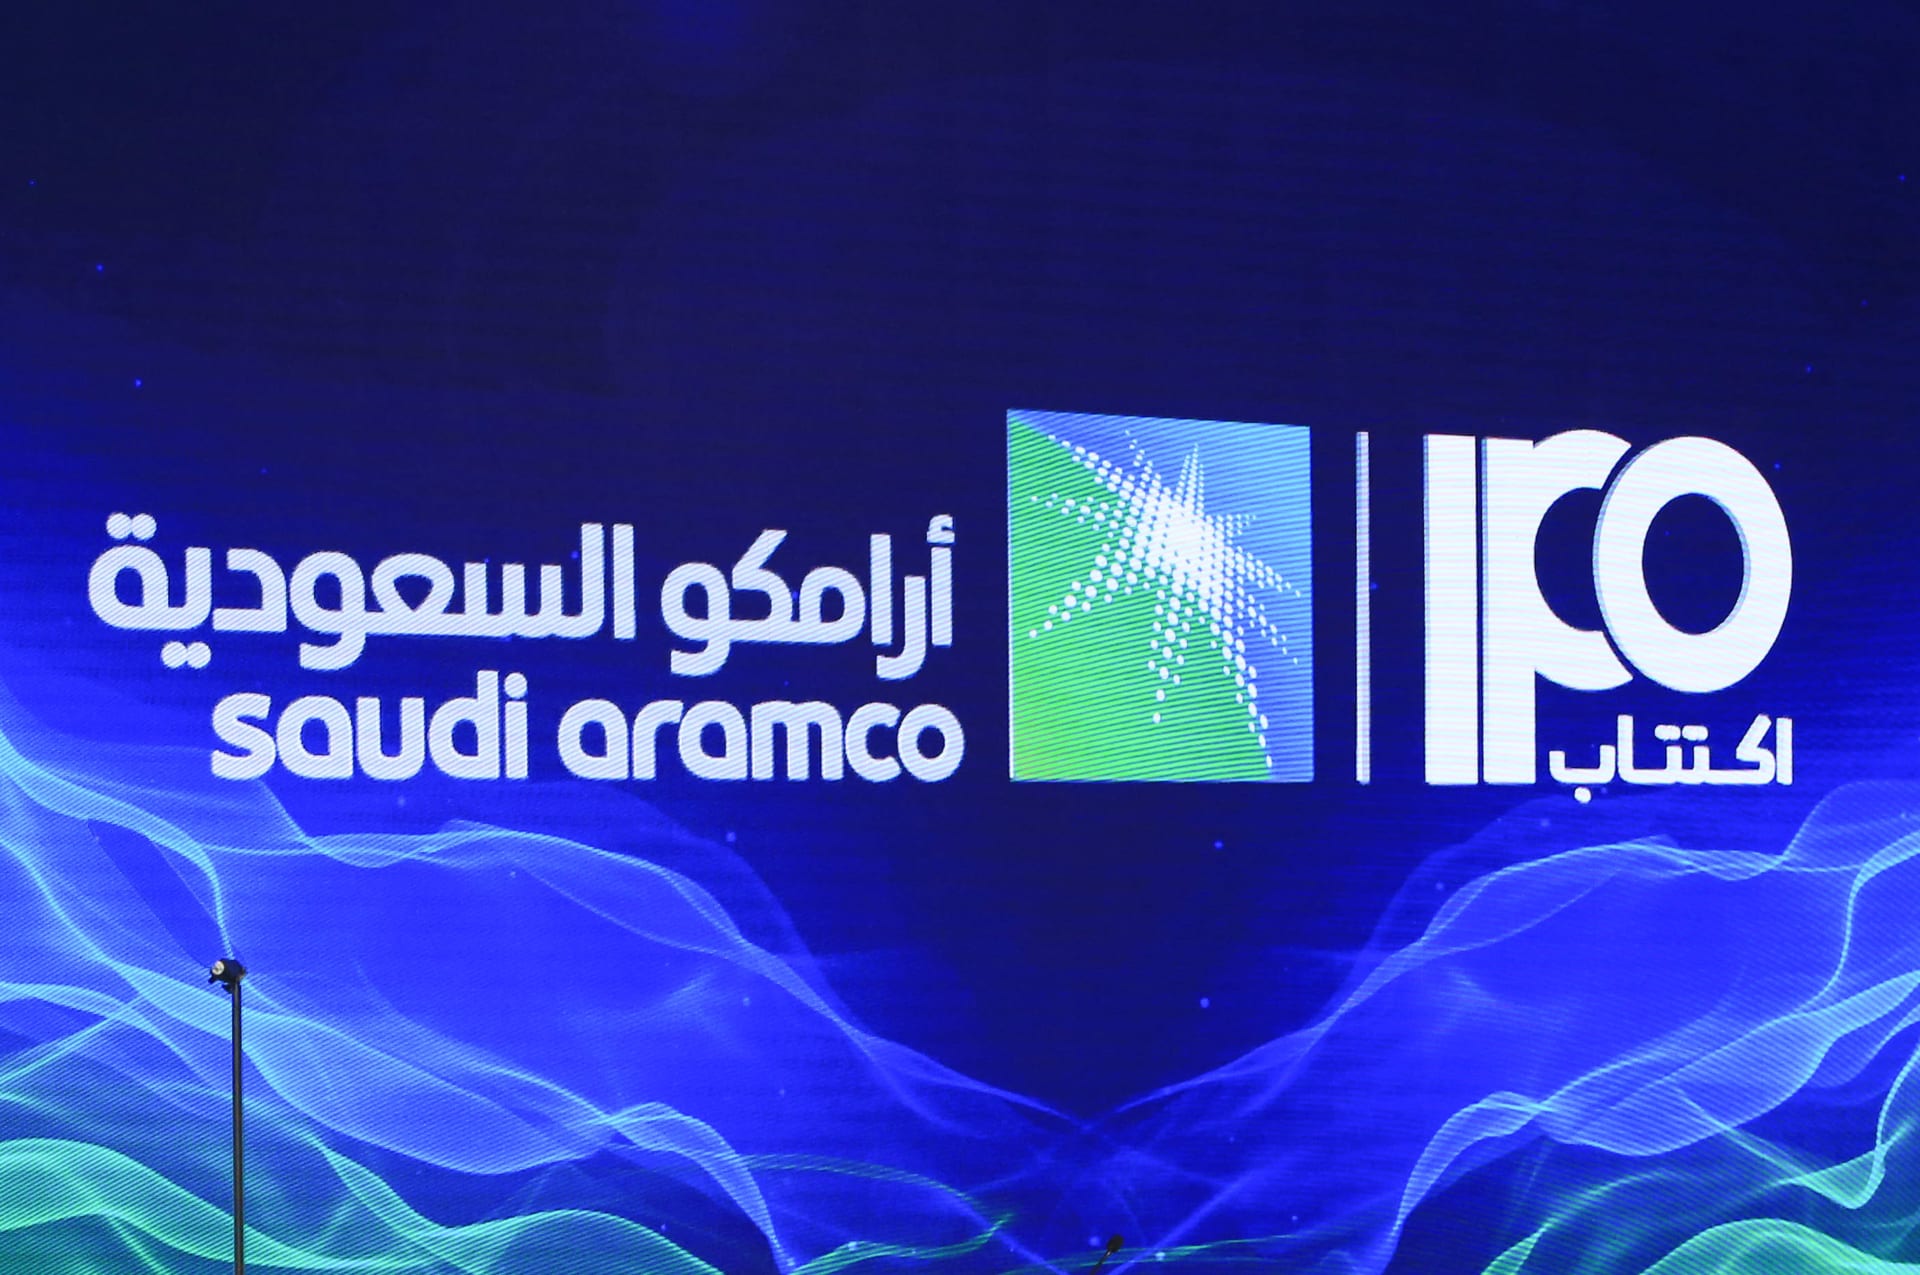 الأمير محمد بن سلمان: هناك طروحات لأسهم أرامكو السعودية في السنوات المقبلة